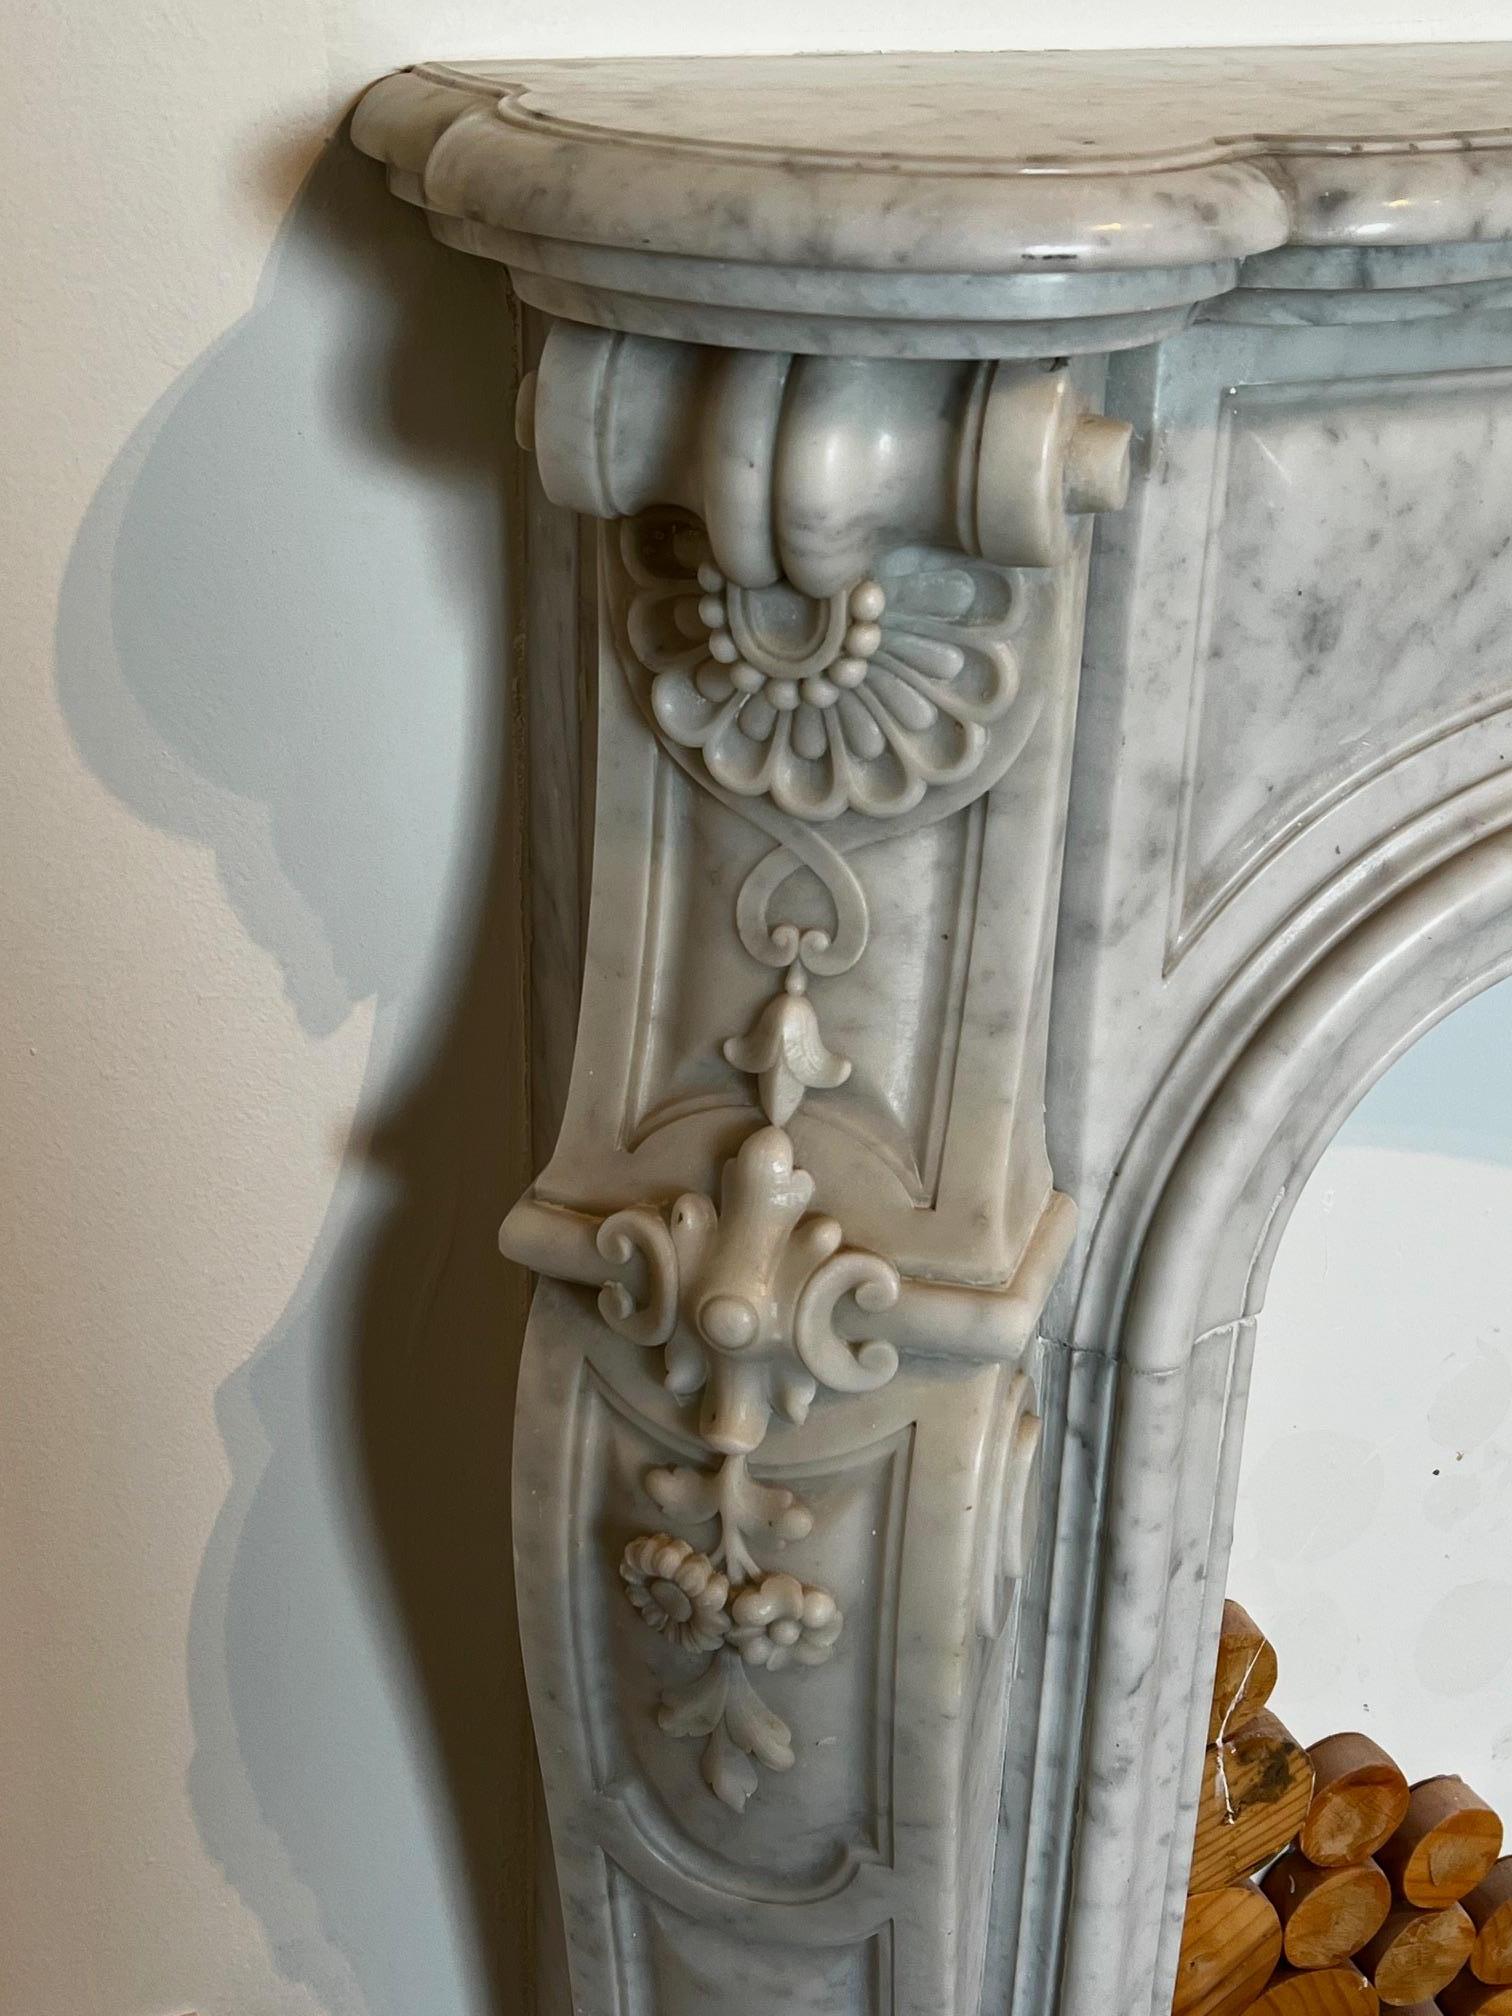 Dieser wunderschön verzierte Kamin, handgeschnitzt im Stil von Louis XV, ist aus halbpoliertem weißem Carrara-Marmor gefertigt. Sowohl auf dem Türsturz als auch auf den Beinen befinden sich fein geschnitzte florale Details. Handgeschnitzte Muscheln